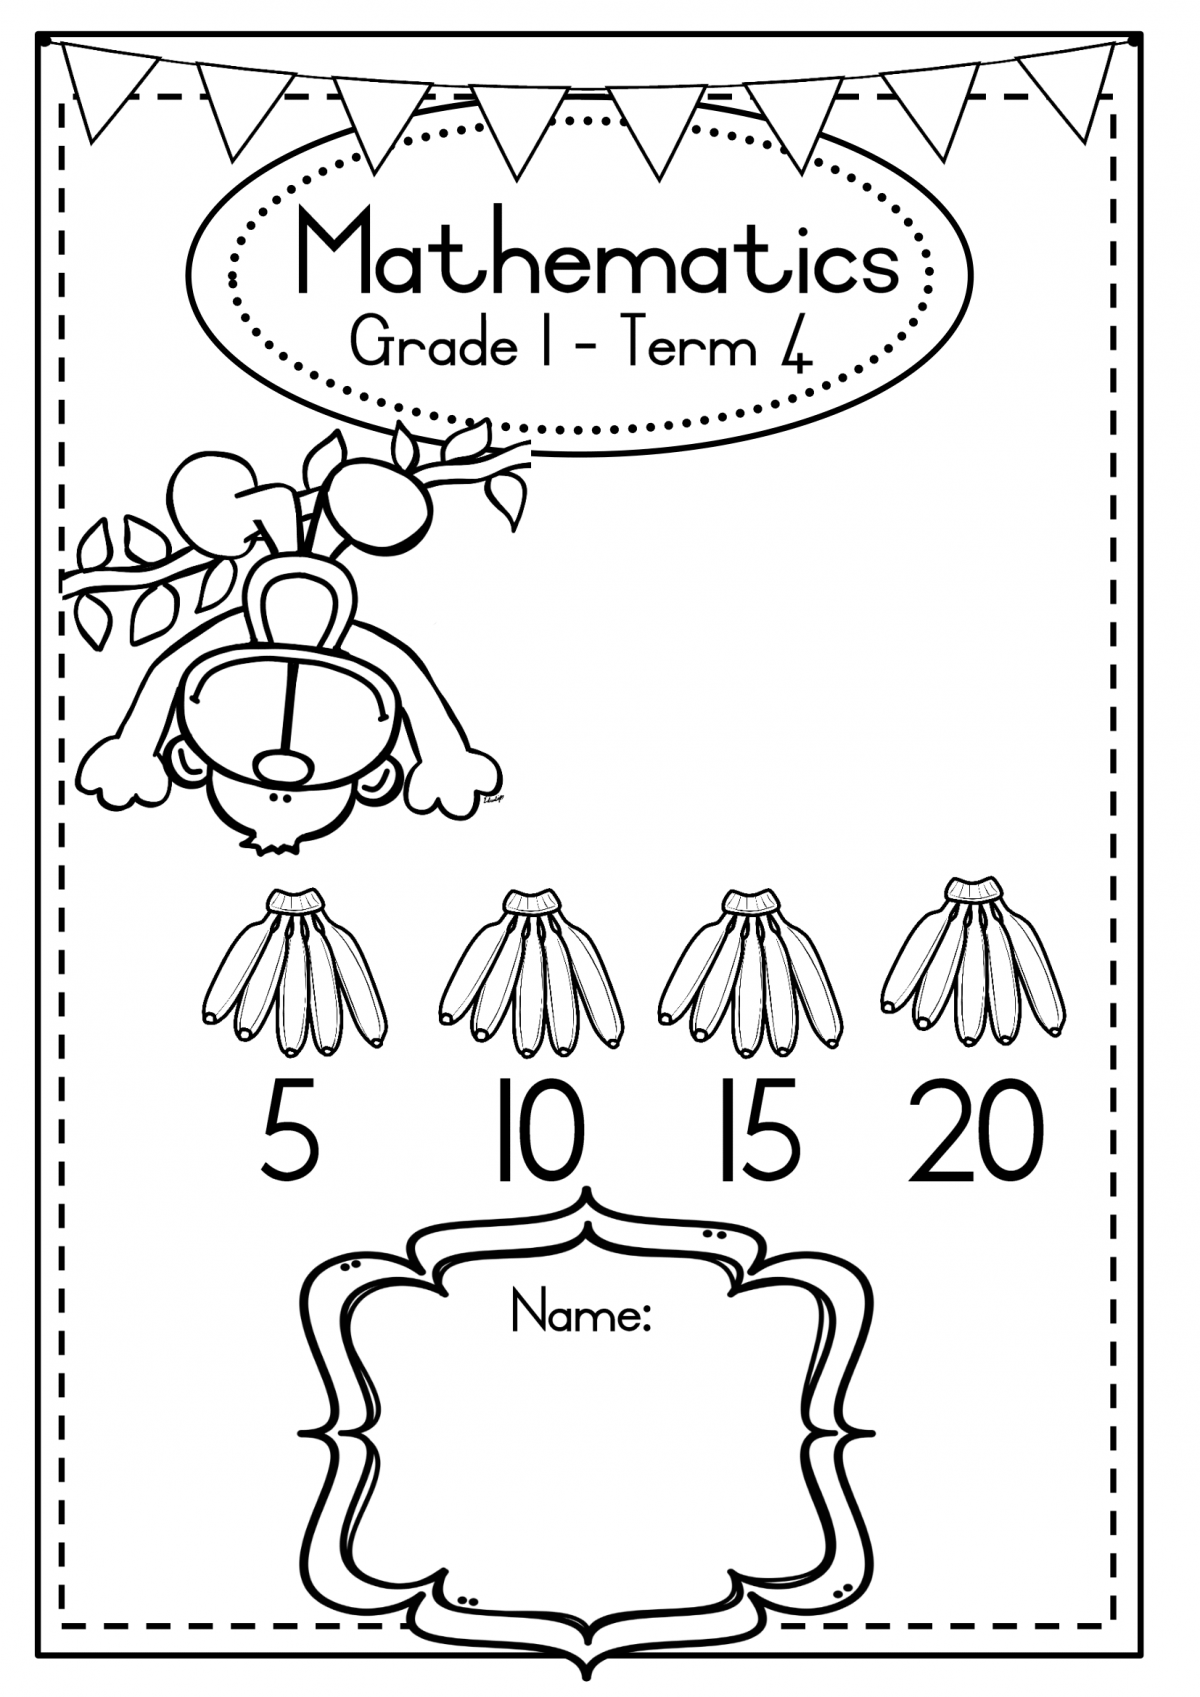  Grade 1 Mathematics Workbook TERM 4 Juffrou 911